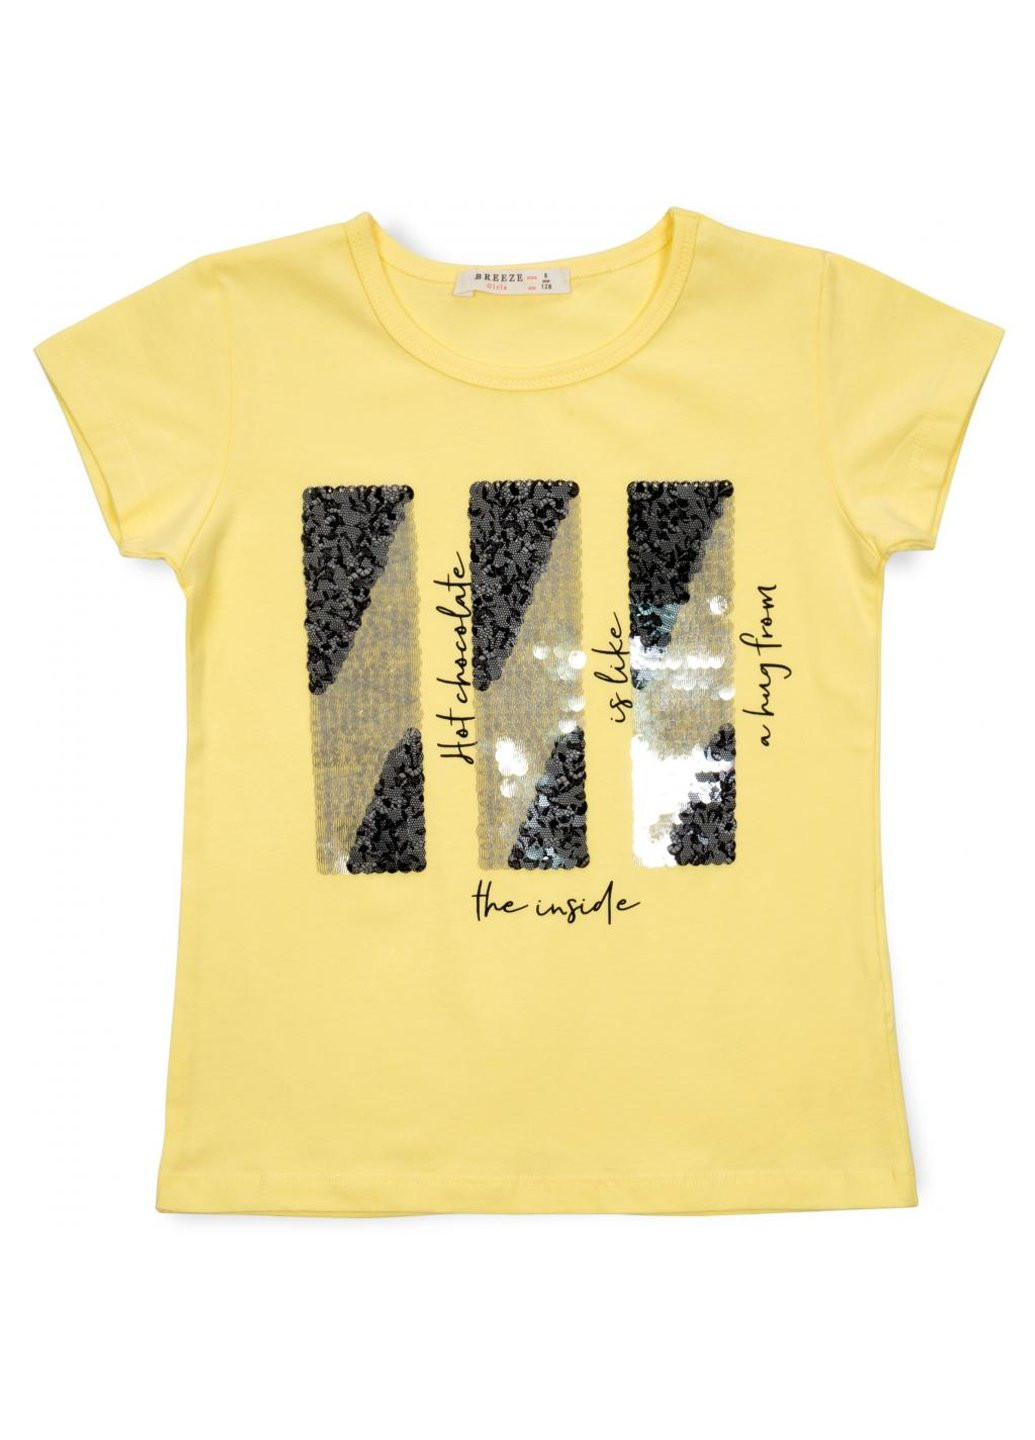 Комбинированная футболка детская с пайетками (14299-152g-yellow) Breeze